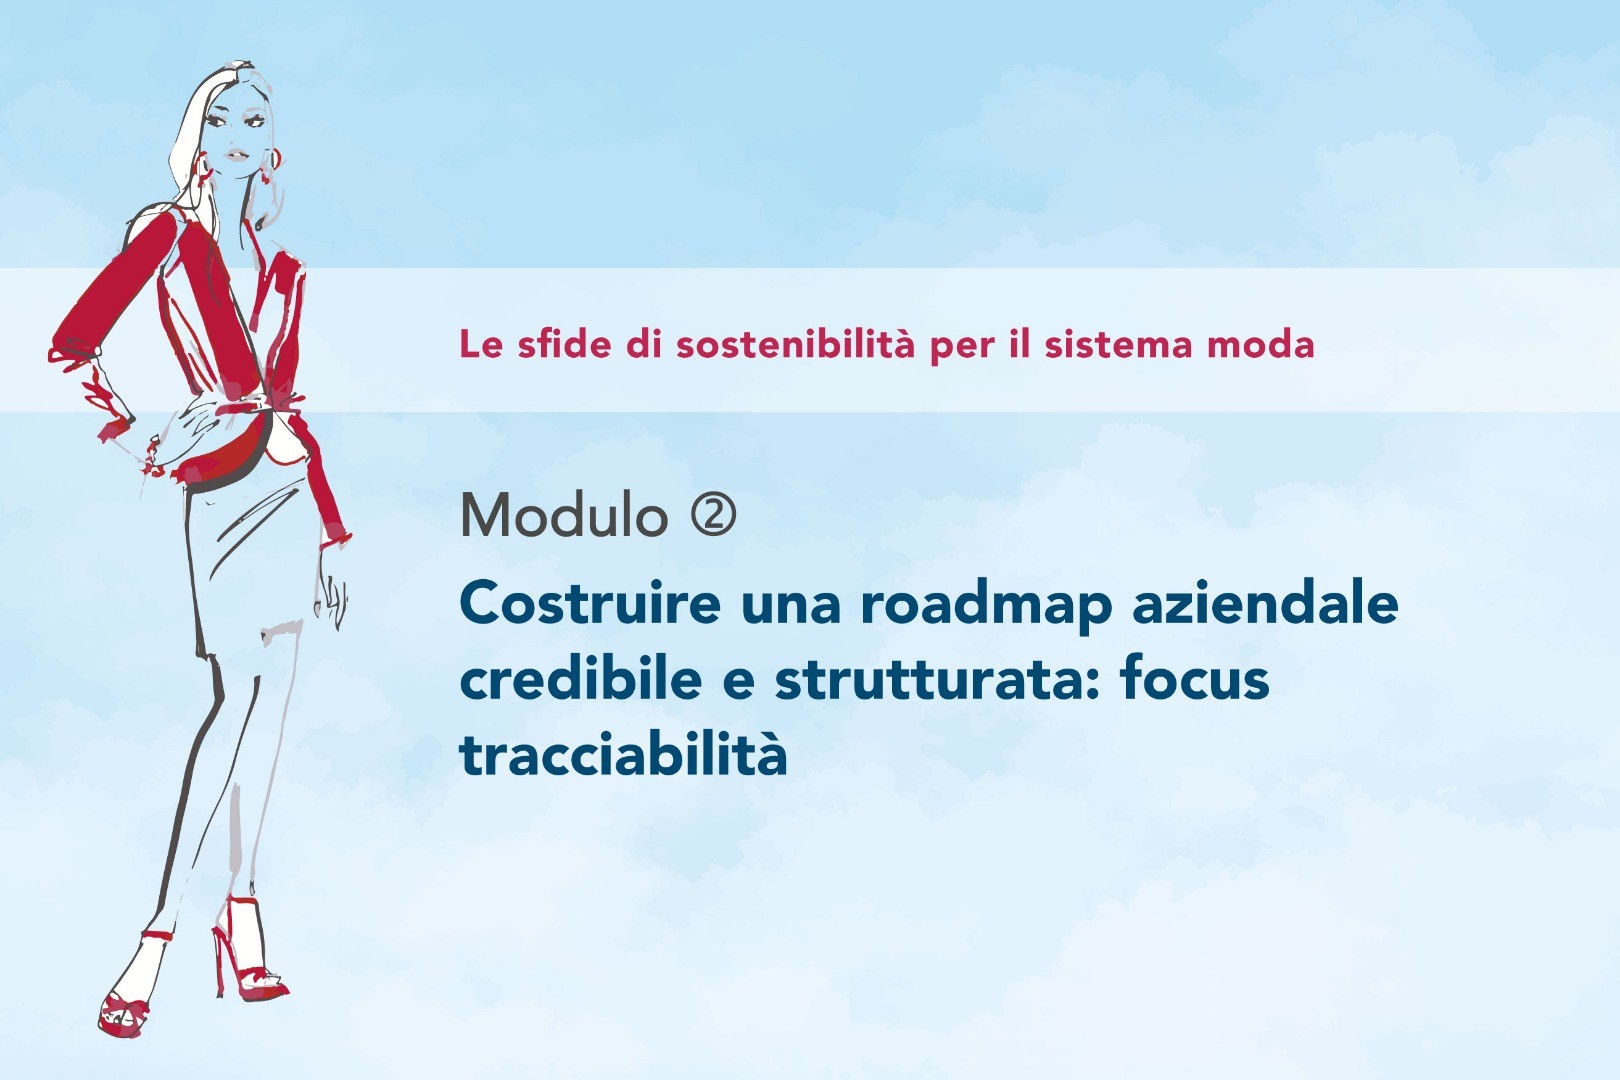 Modulo 2 - Costruire una roadmap aziendale credibile e strutturata: focus Tracciabilità